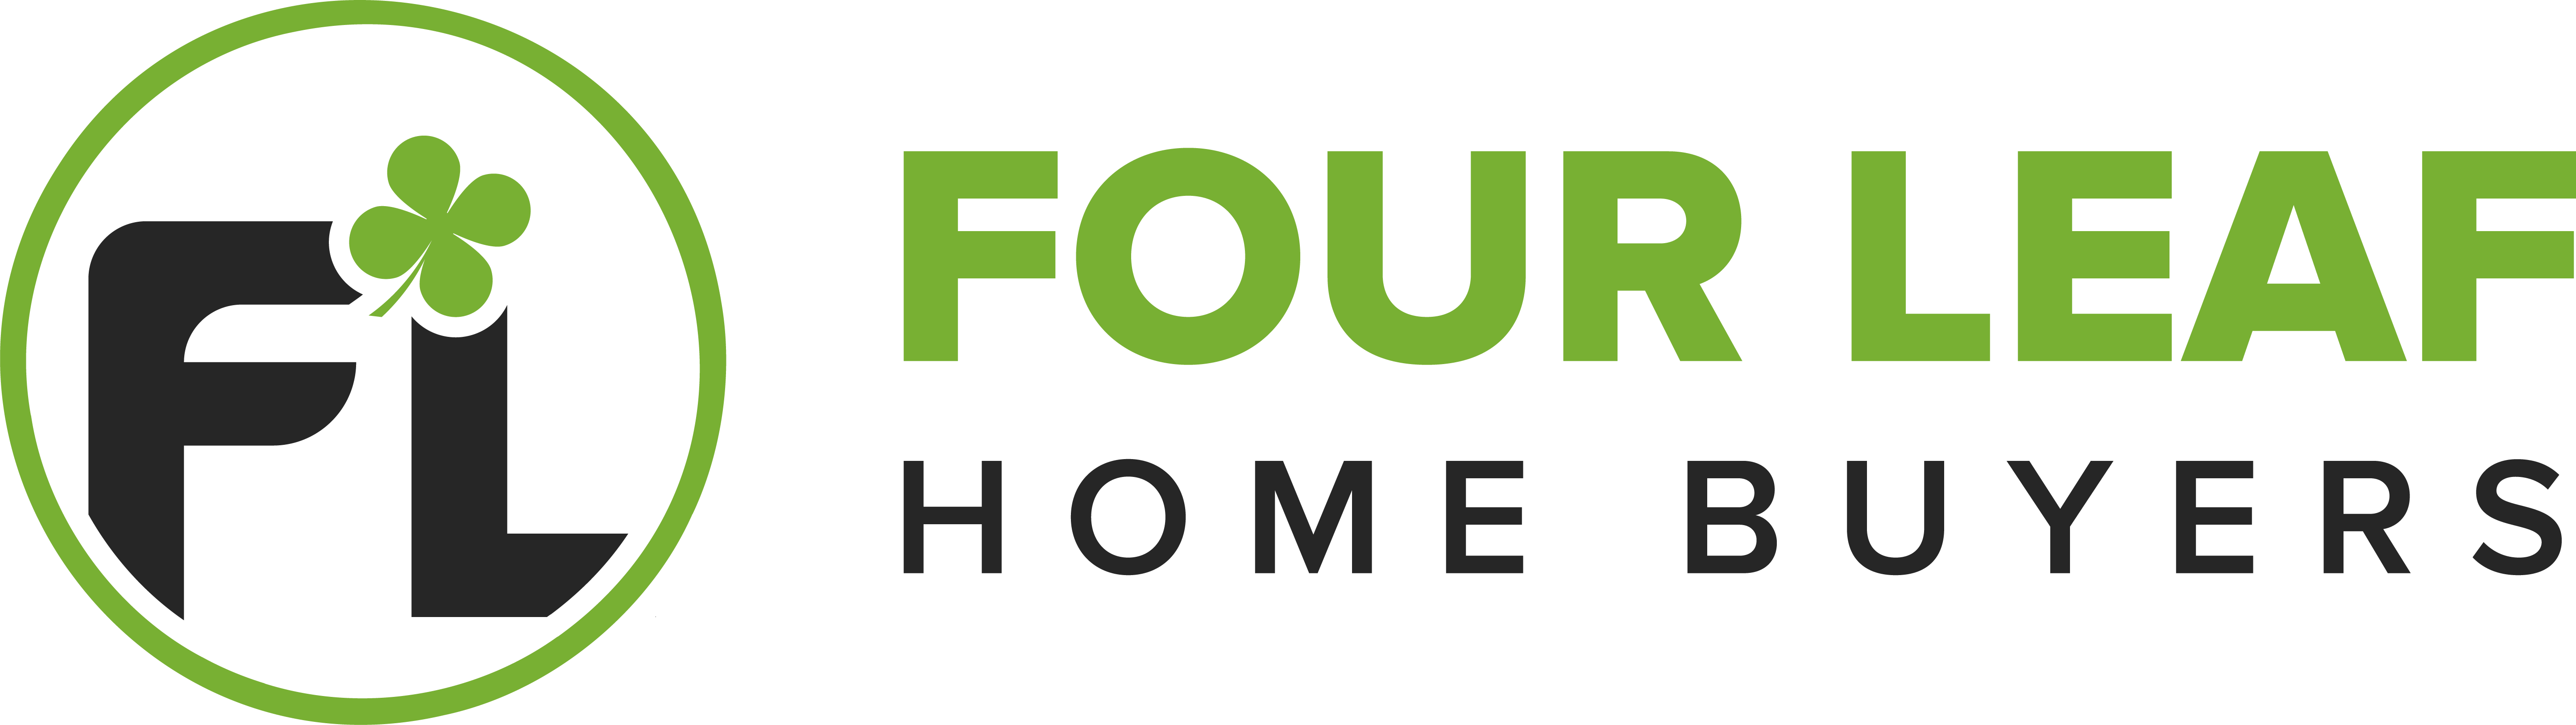 Four Leaf Home Buyers logo